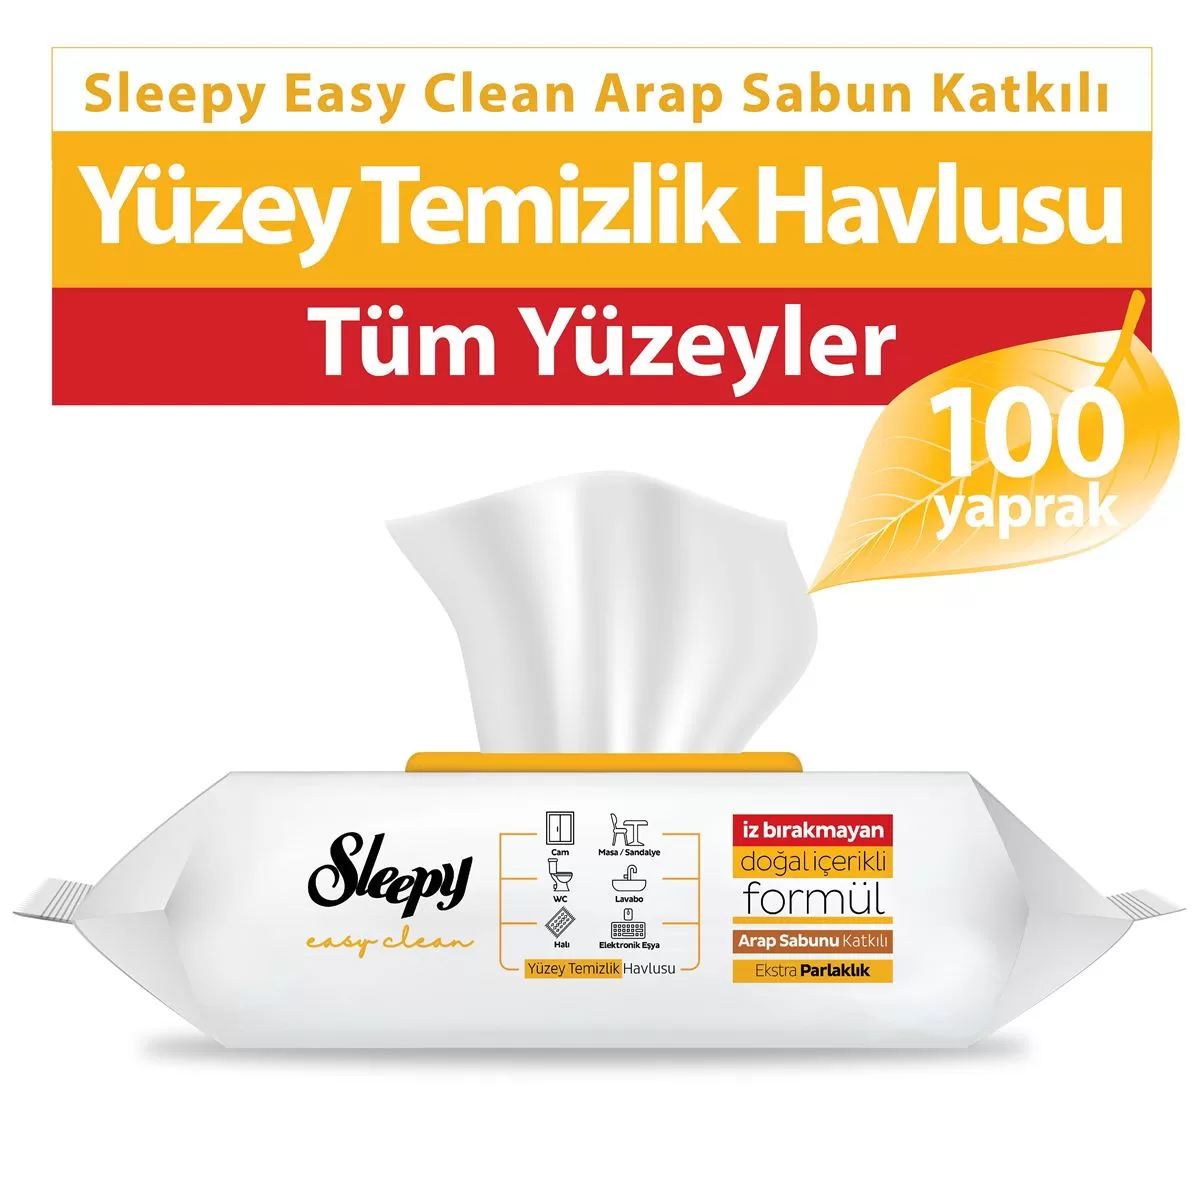 Sleepy Easy Clean Yüzey Temizlik Havlusu Arap Sabun Katkılı 100 Yaprak